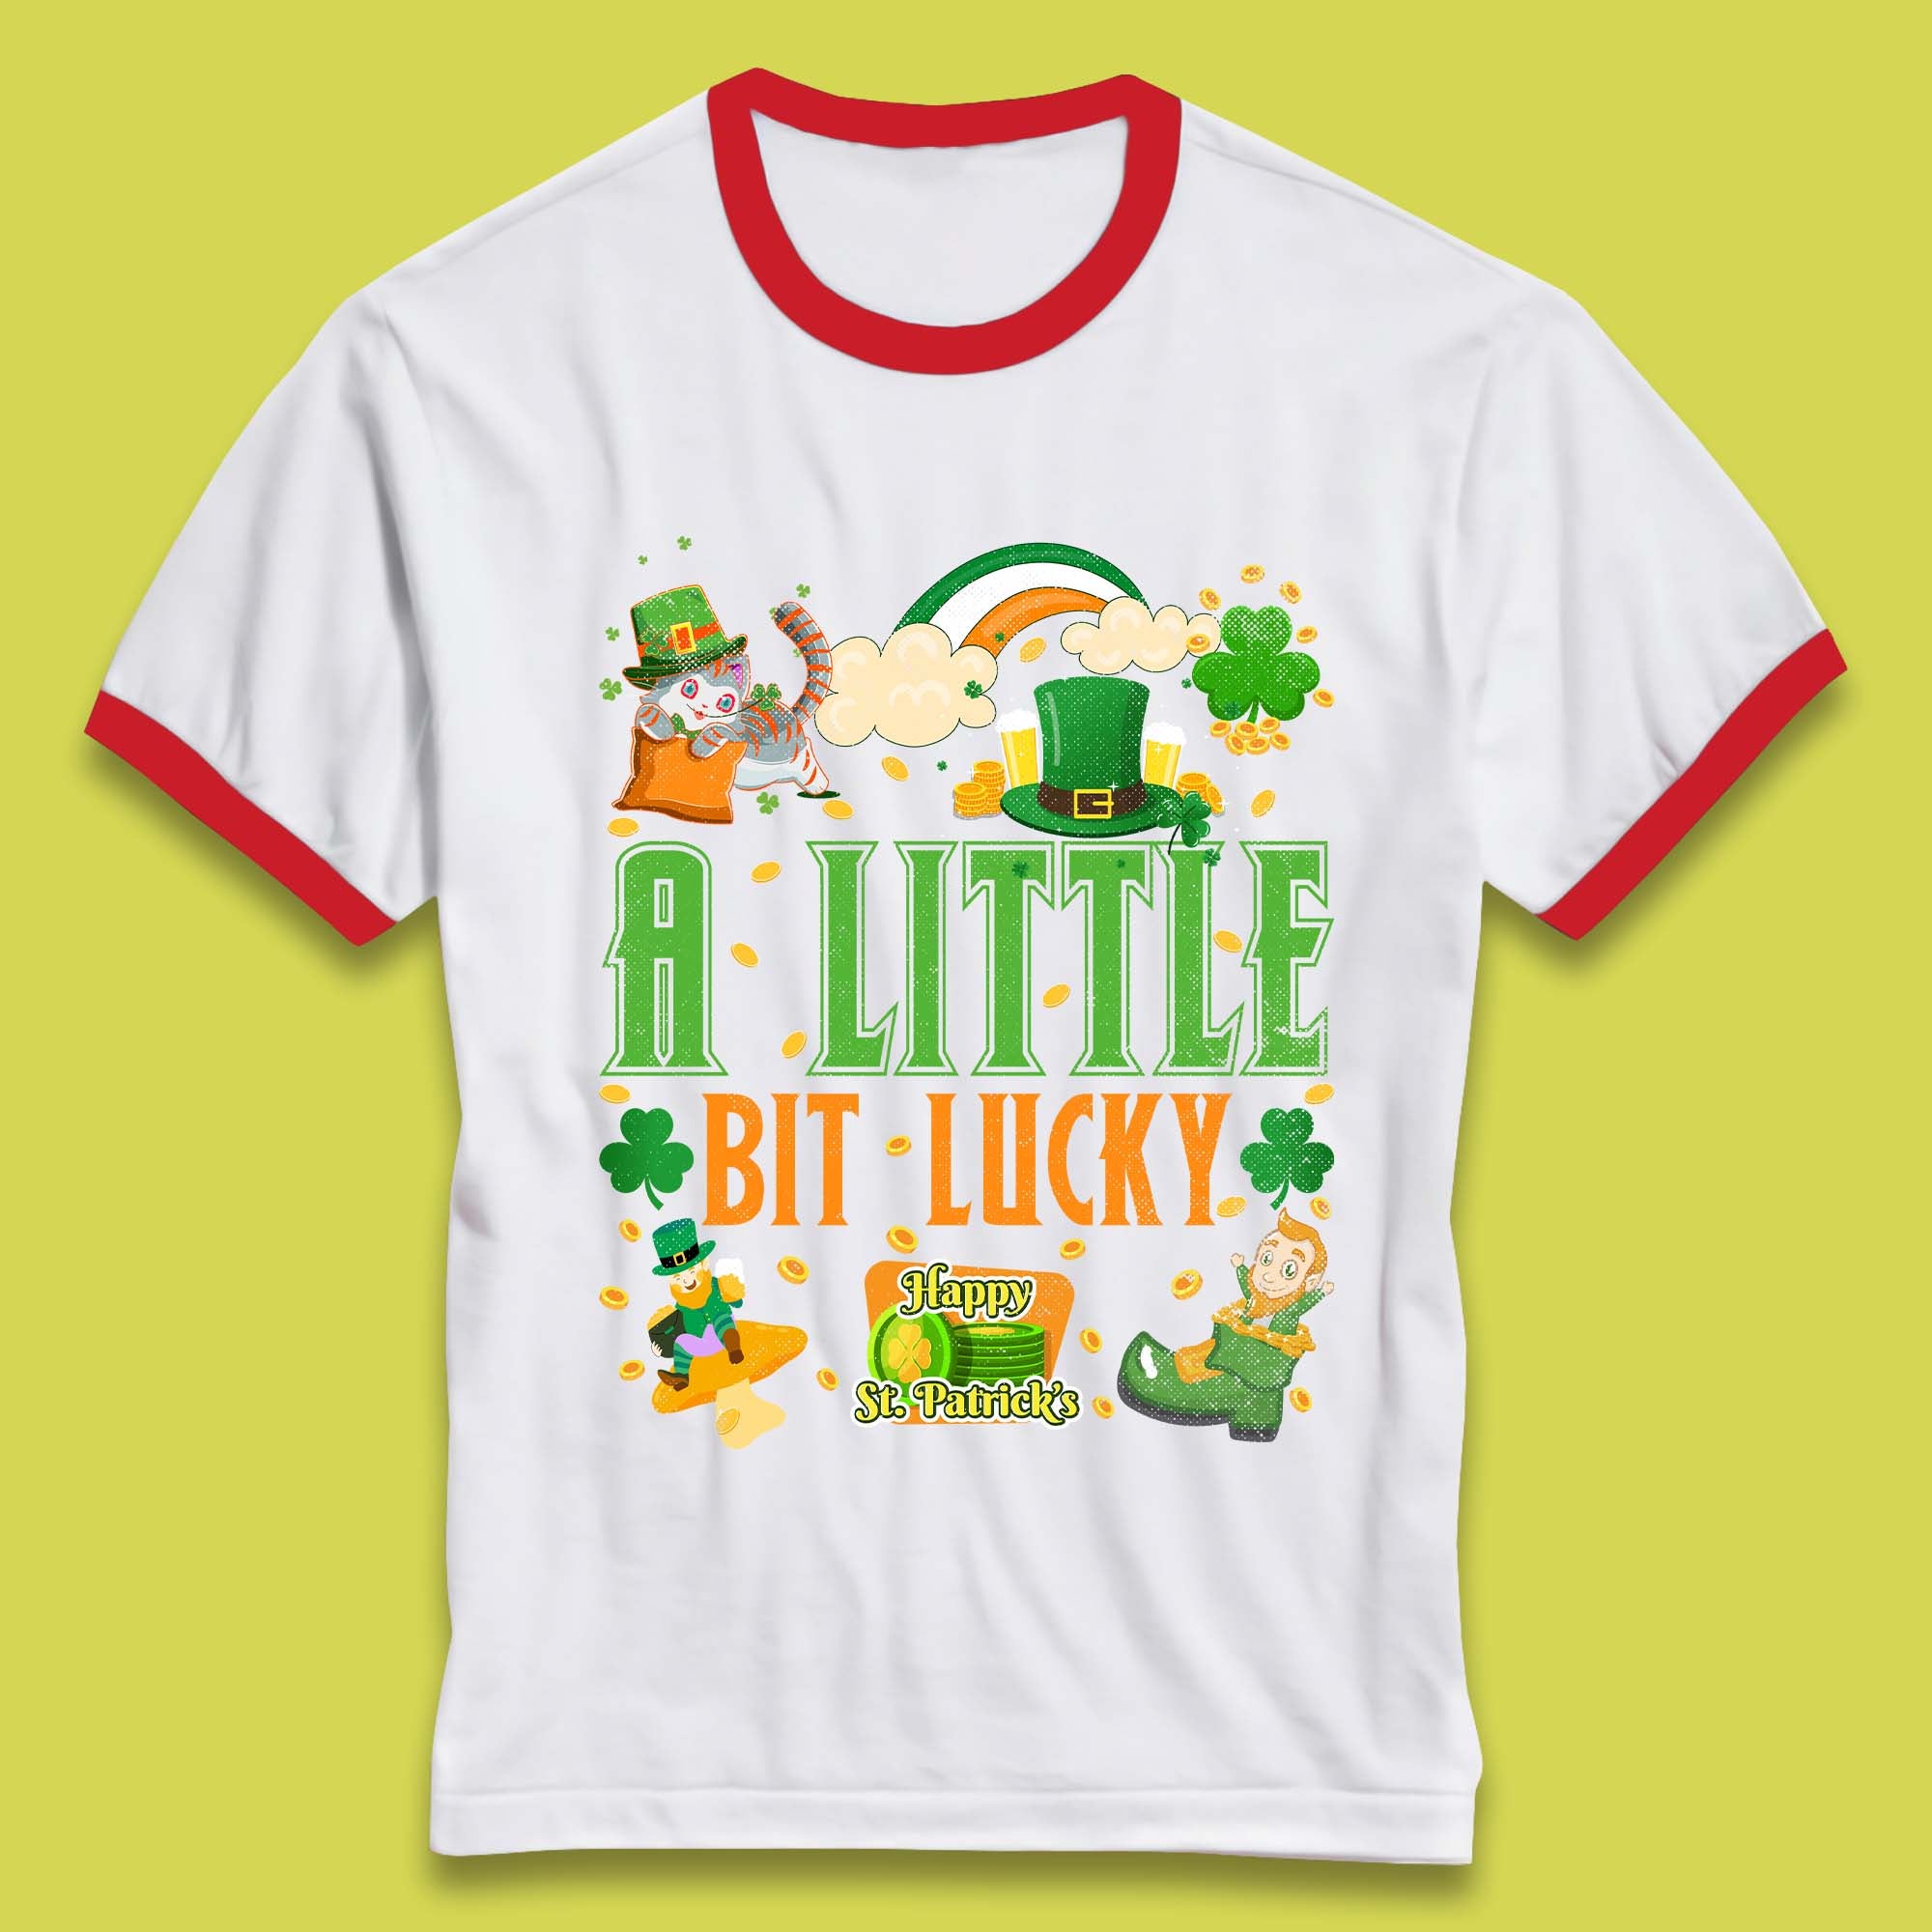 A Little Bit Lucky St. Patrick's Ringer T-Shirt